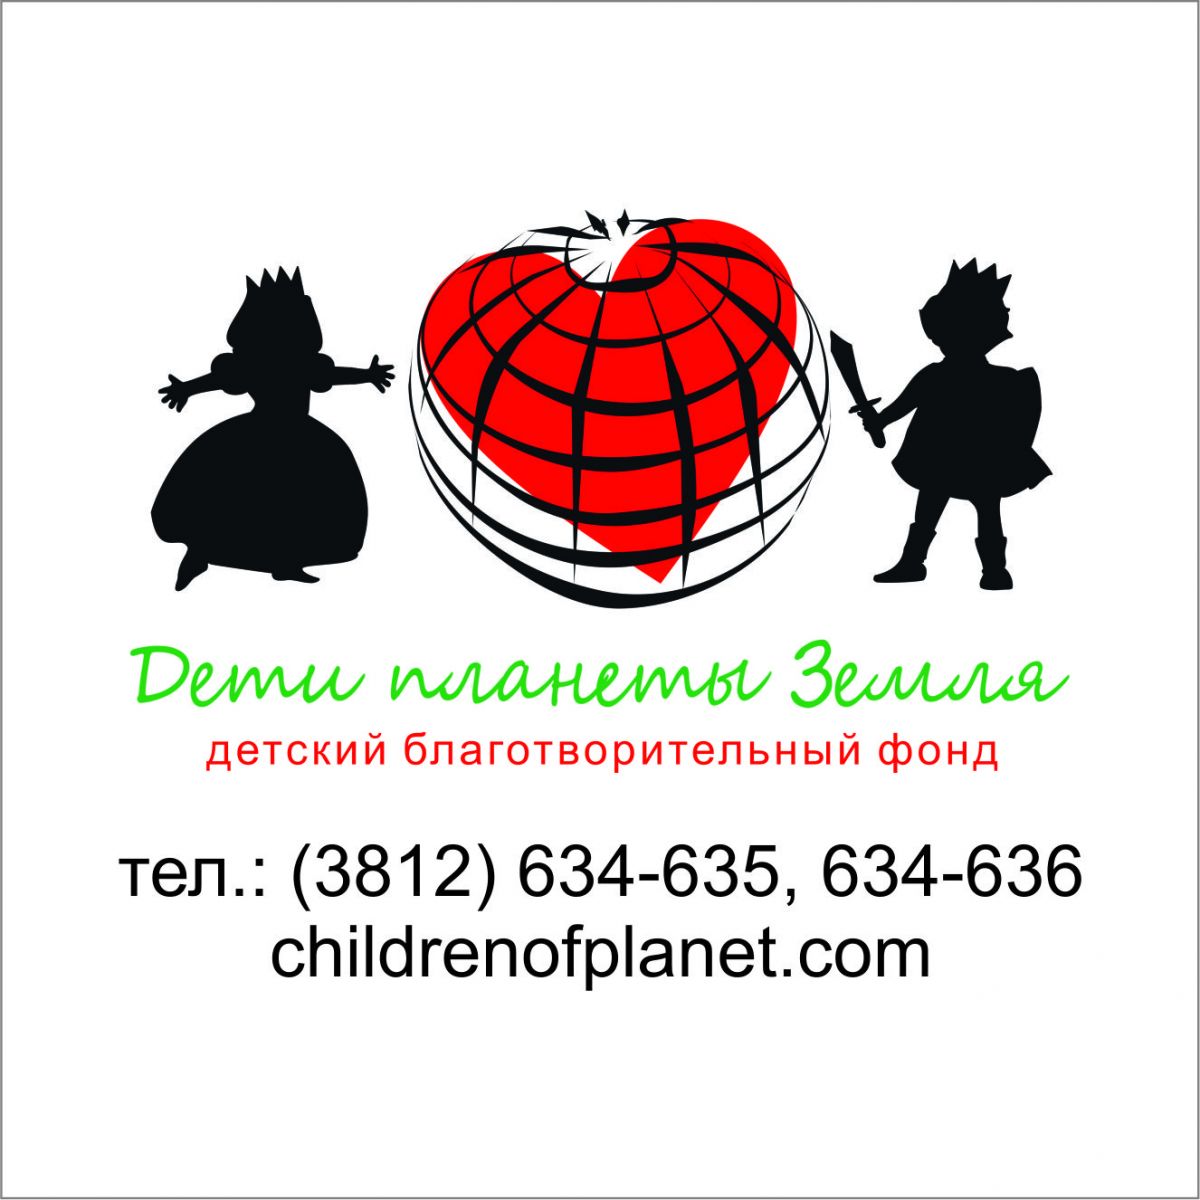 Детский благотворительный фонд